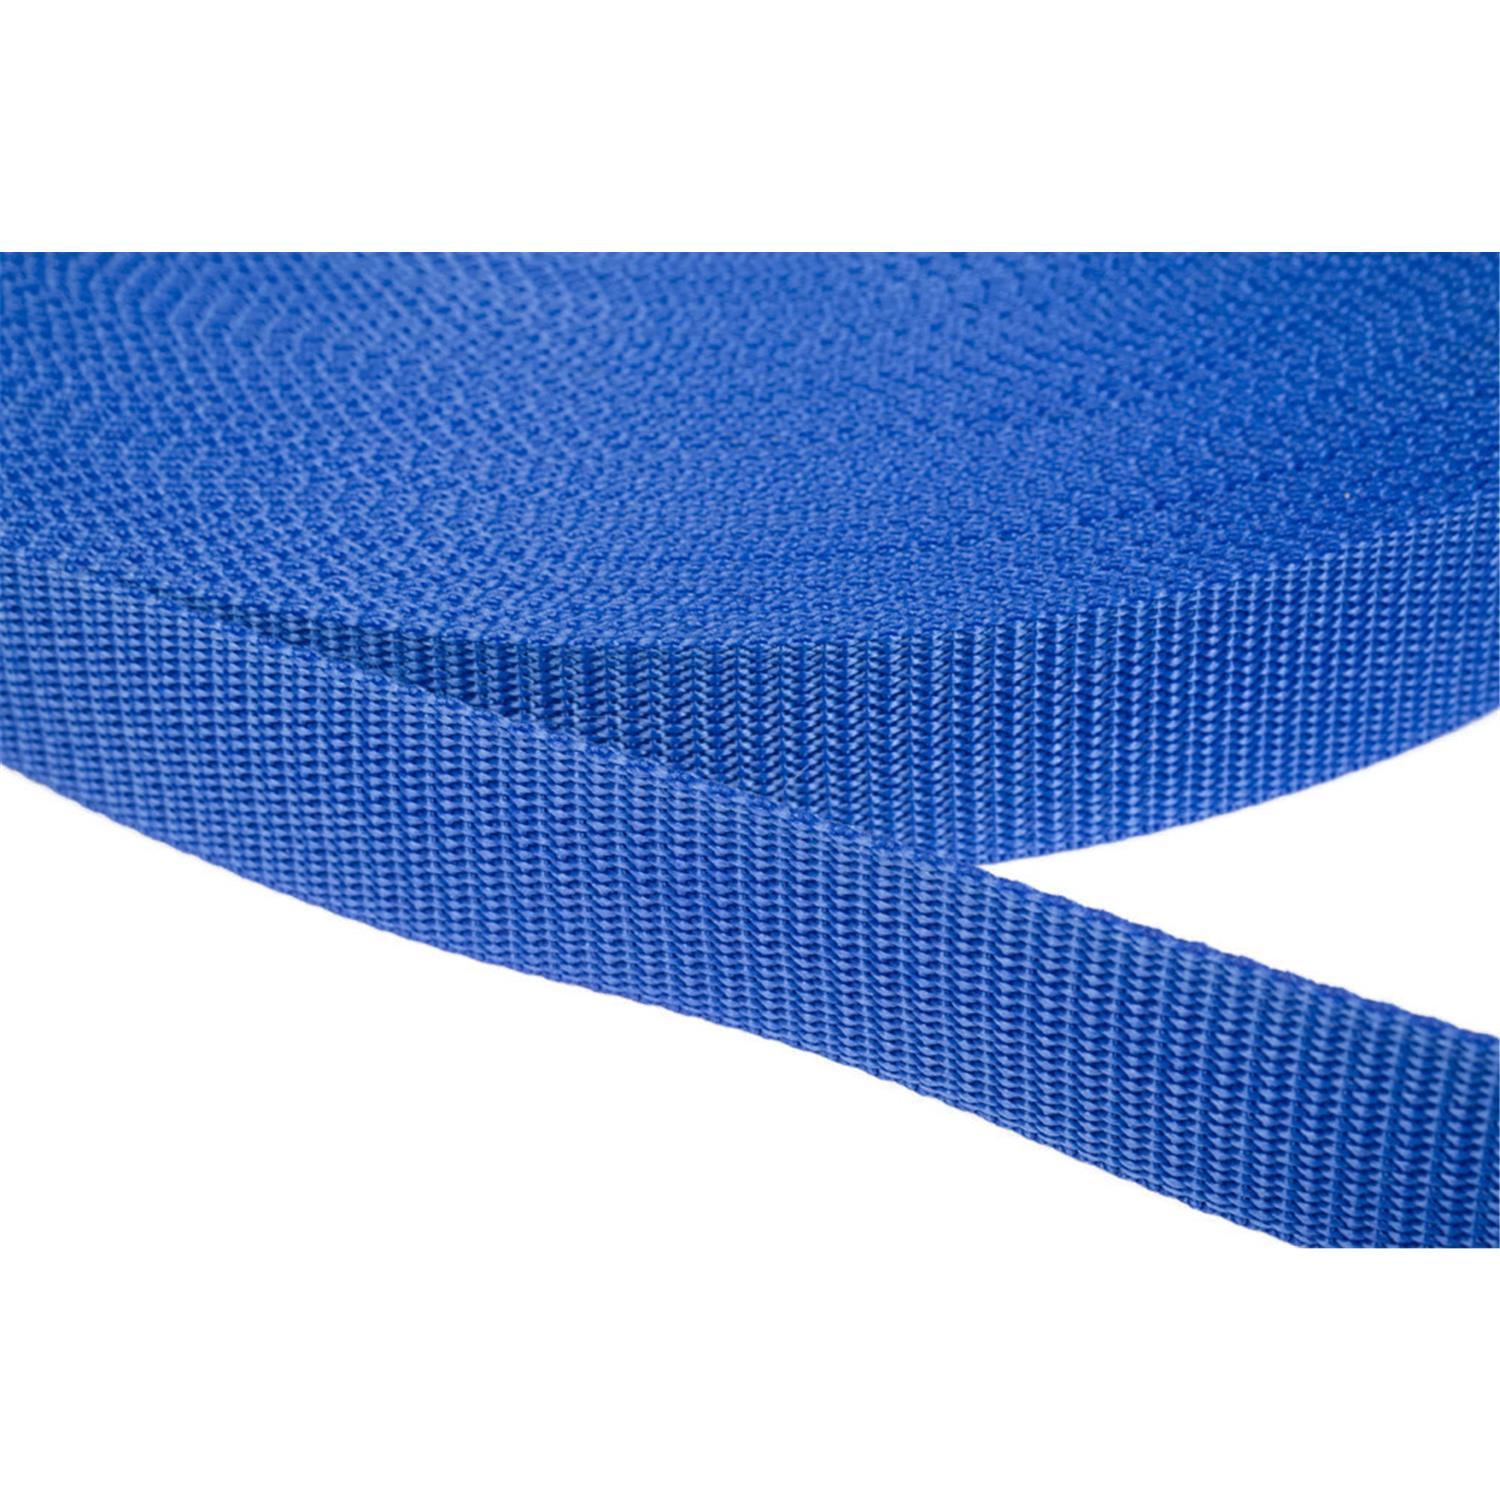 Gurtband 25mm breit aus Polypropylen in 41 Farben 26 - royalblau 12 Meter